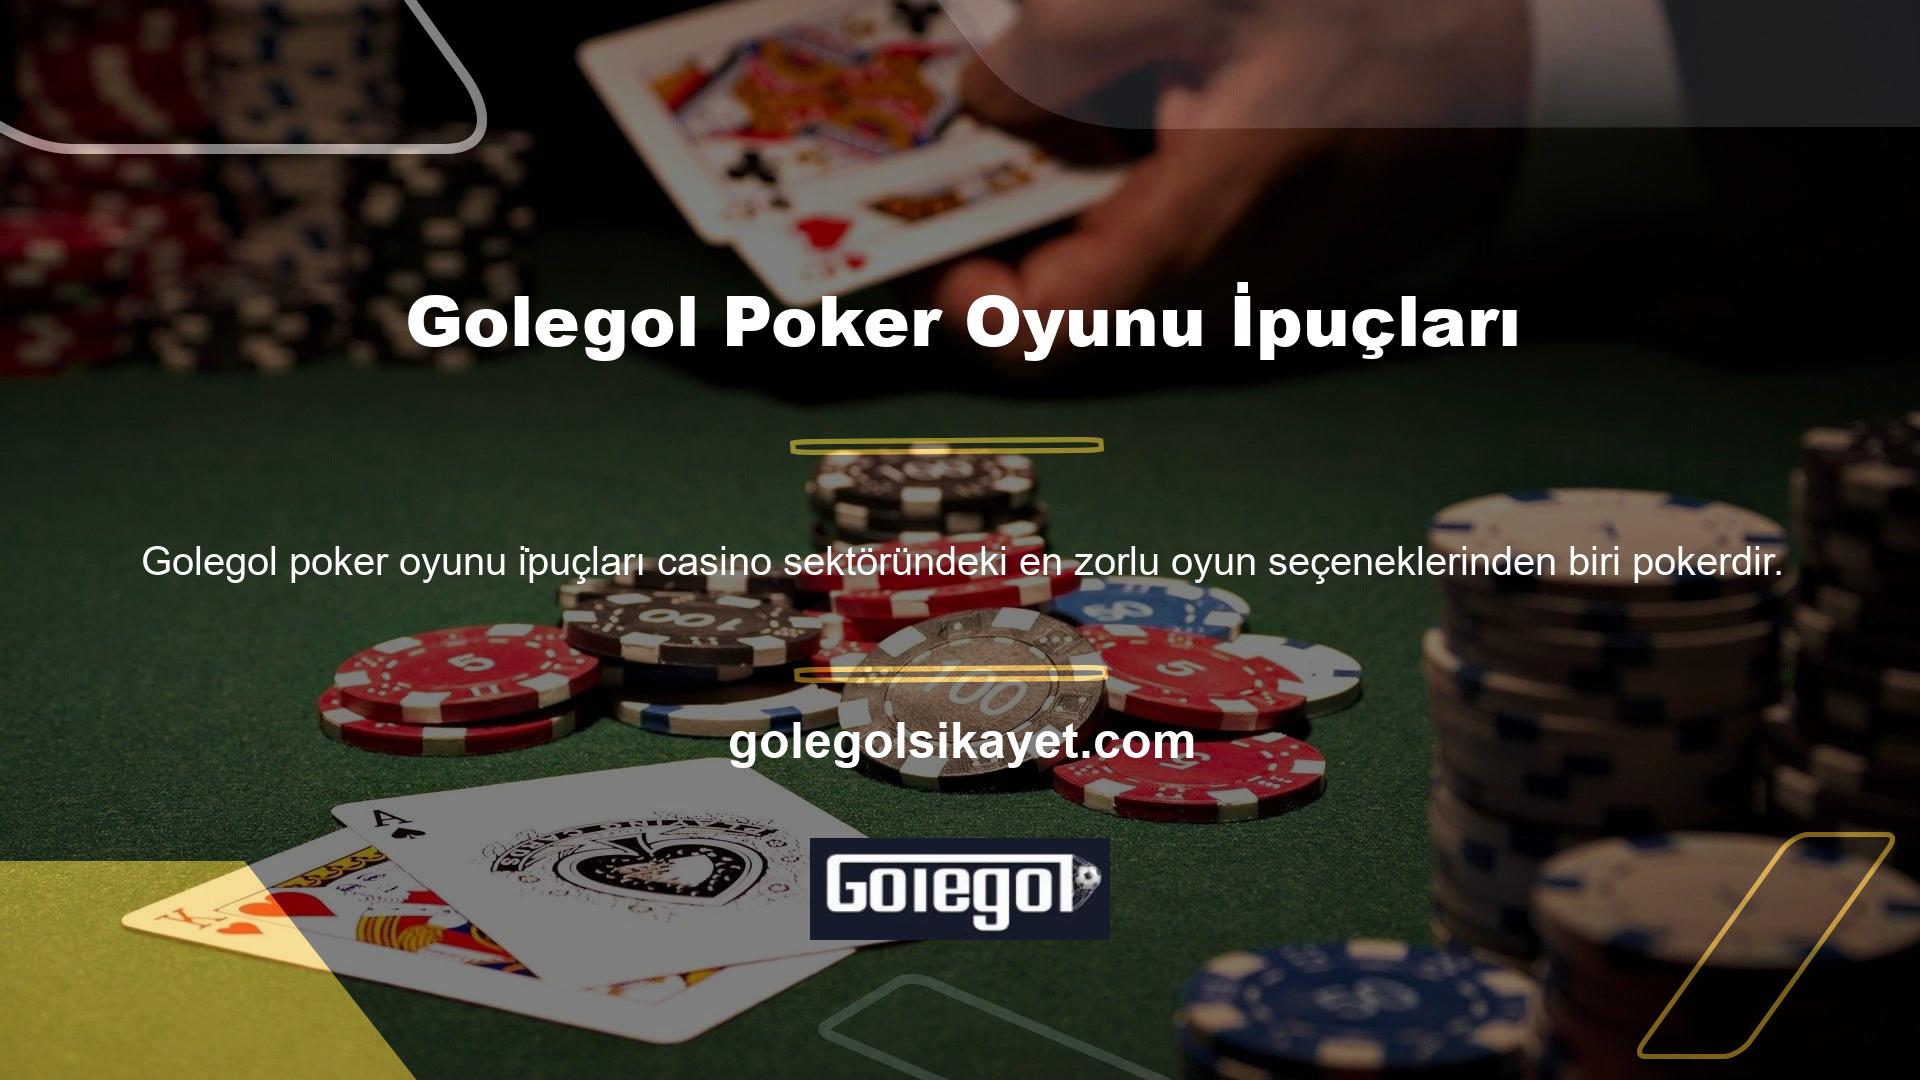 Bu nedenle, gerçek para kazanabileceğiniz harika bir sanal poker ortamı yarattıkları için kazanma stratejileri Golegol poker oyunları arasında benzersizdir